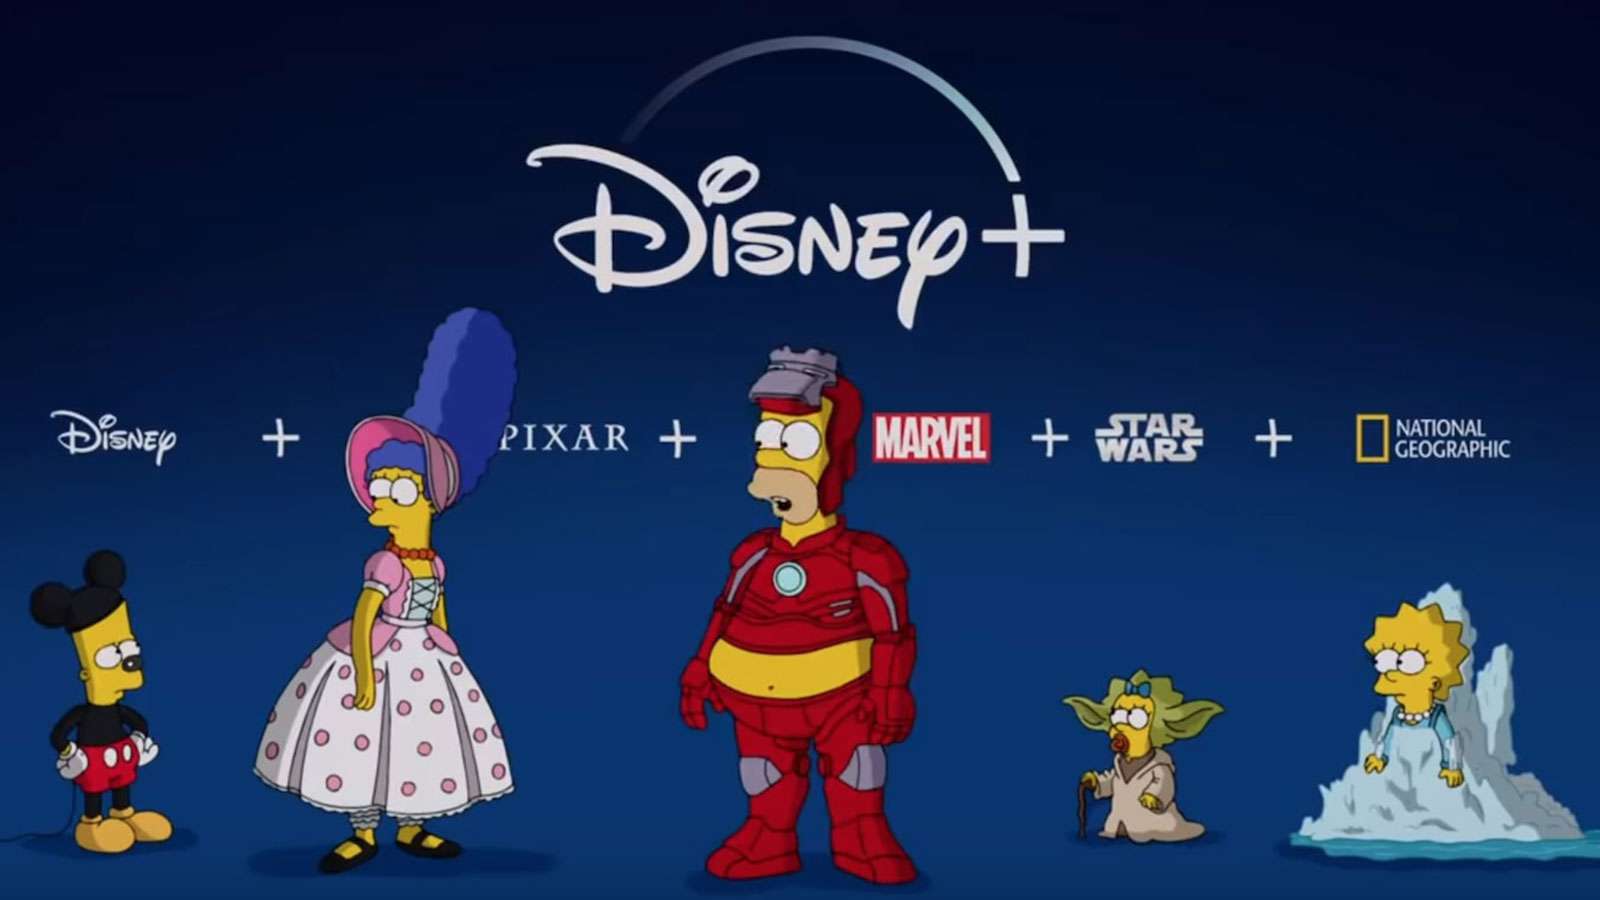 Pour le lancement de Disney+ plsuieurs influenceurs dont Cyprien ont été dessinés façon Simpsons